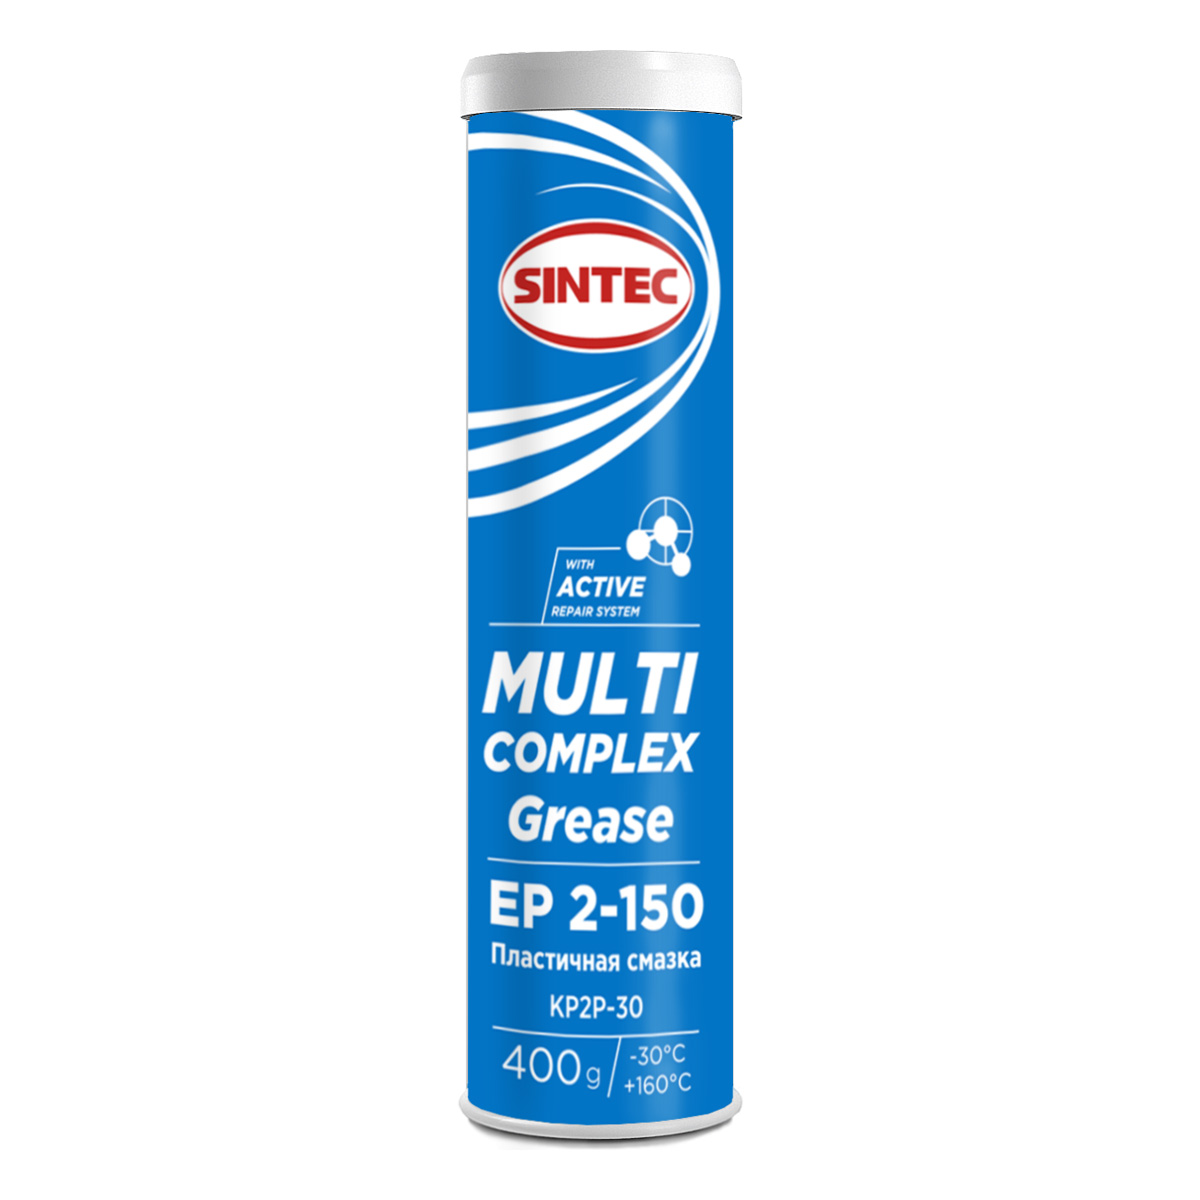 SINTEC MULTI COMPLEX GREASE EP 2-150 Пластичные смазки: описание, применение, свойства, где
							купить